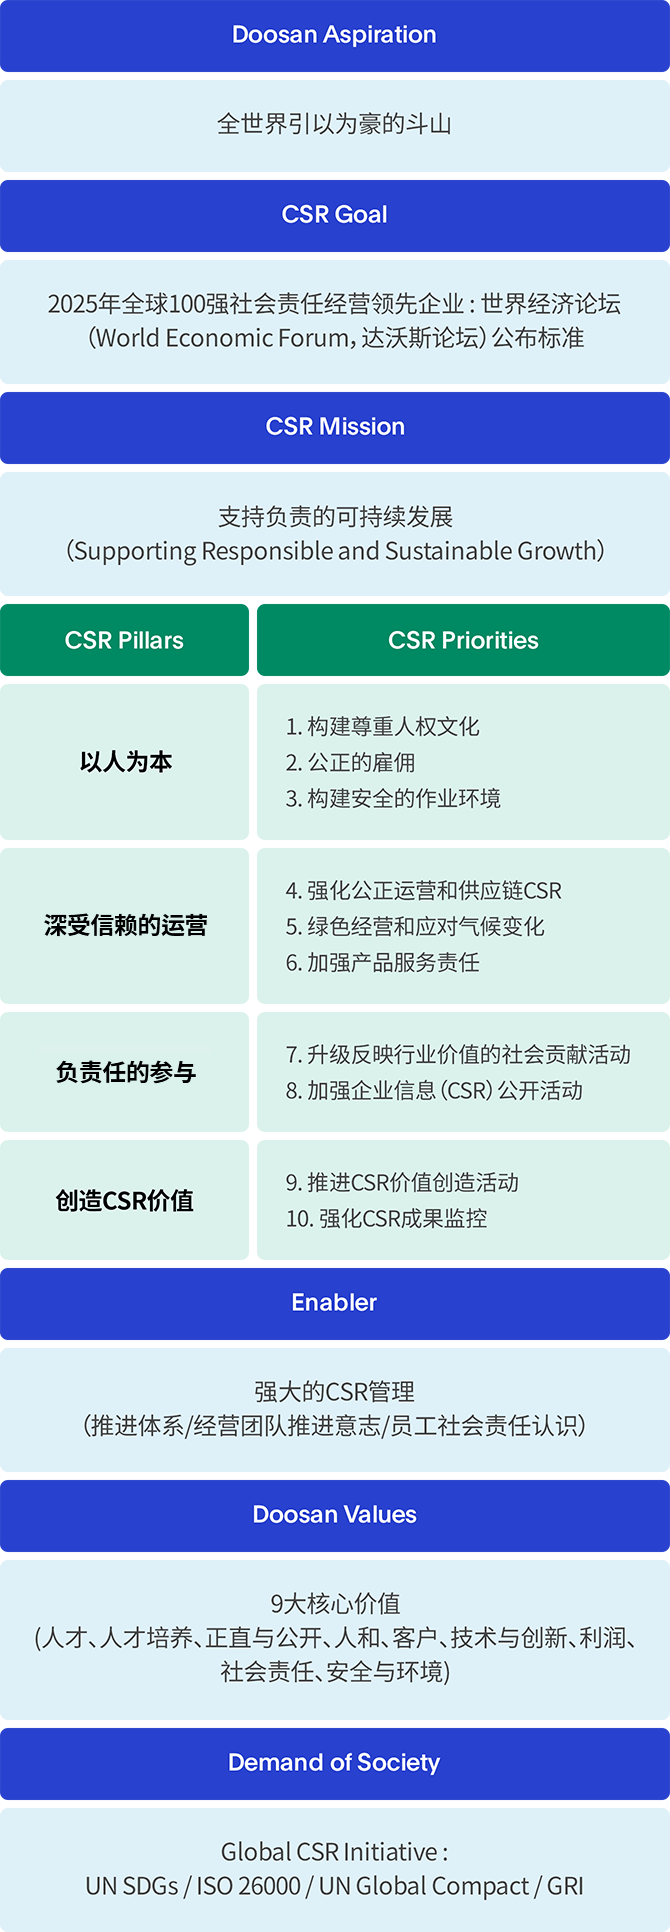 CSR 战略 图解 图片